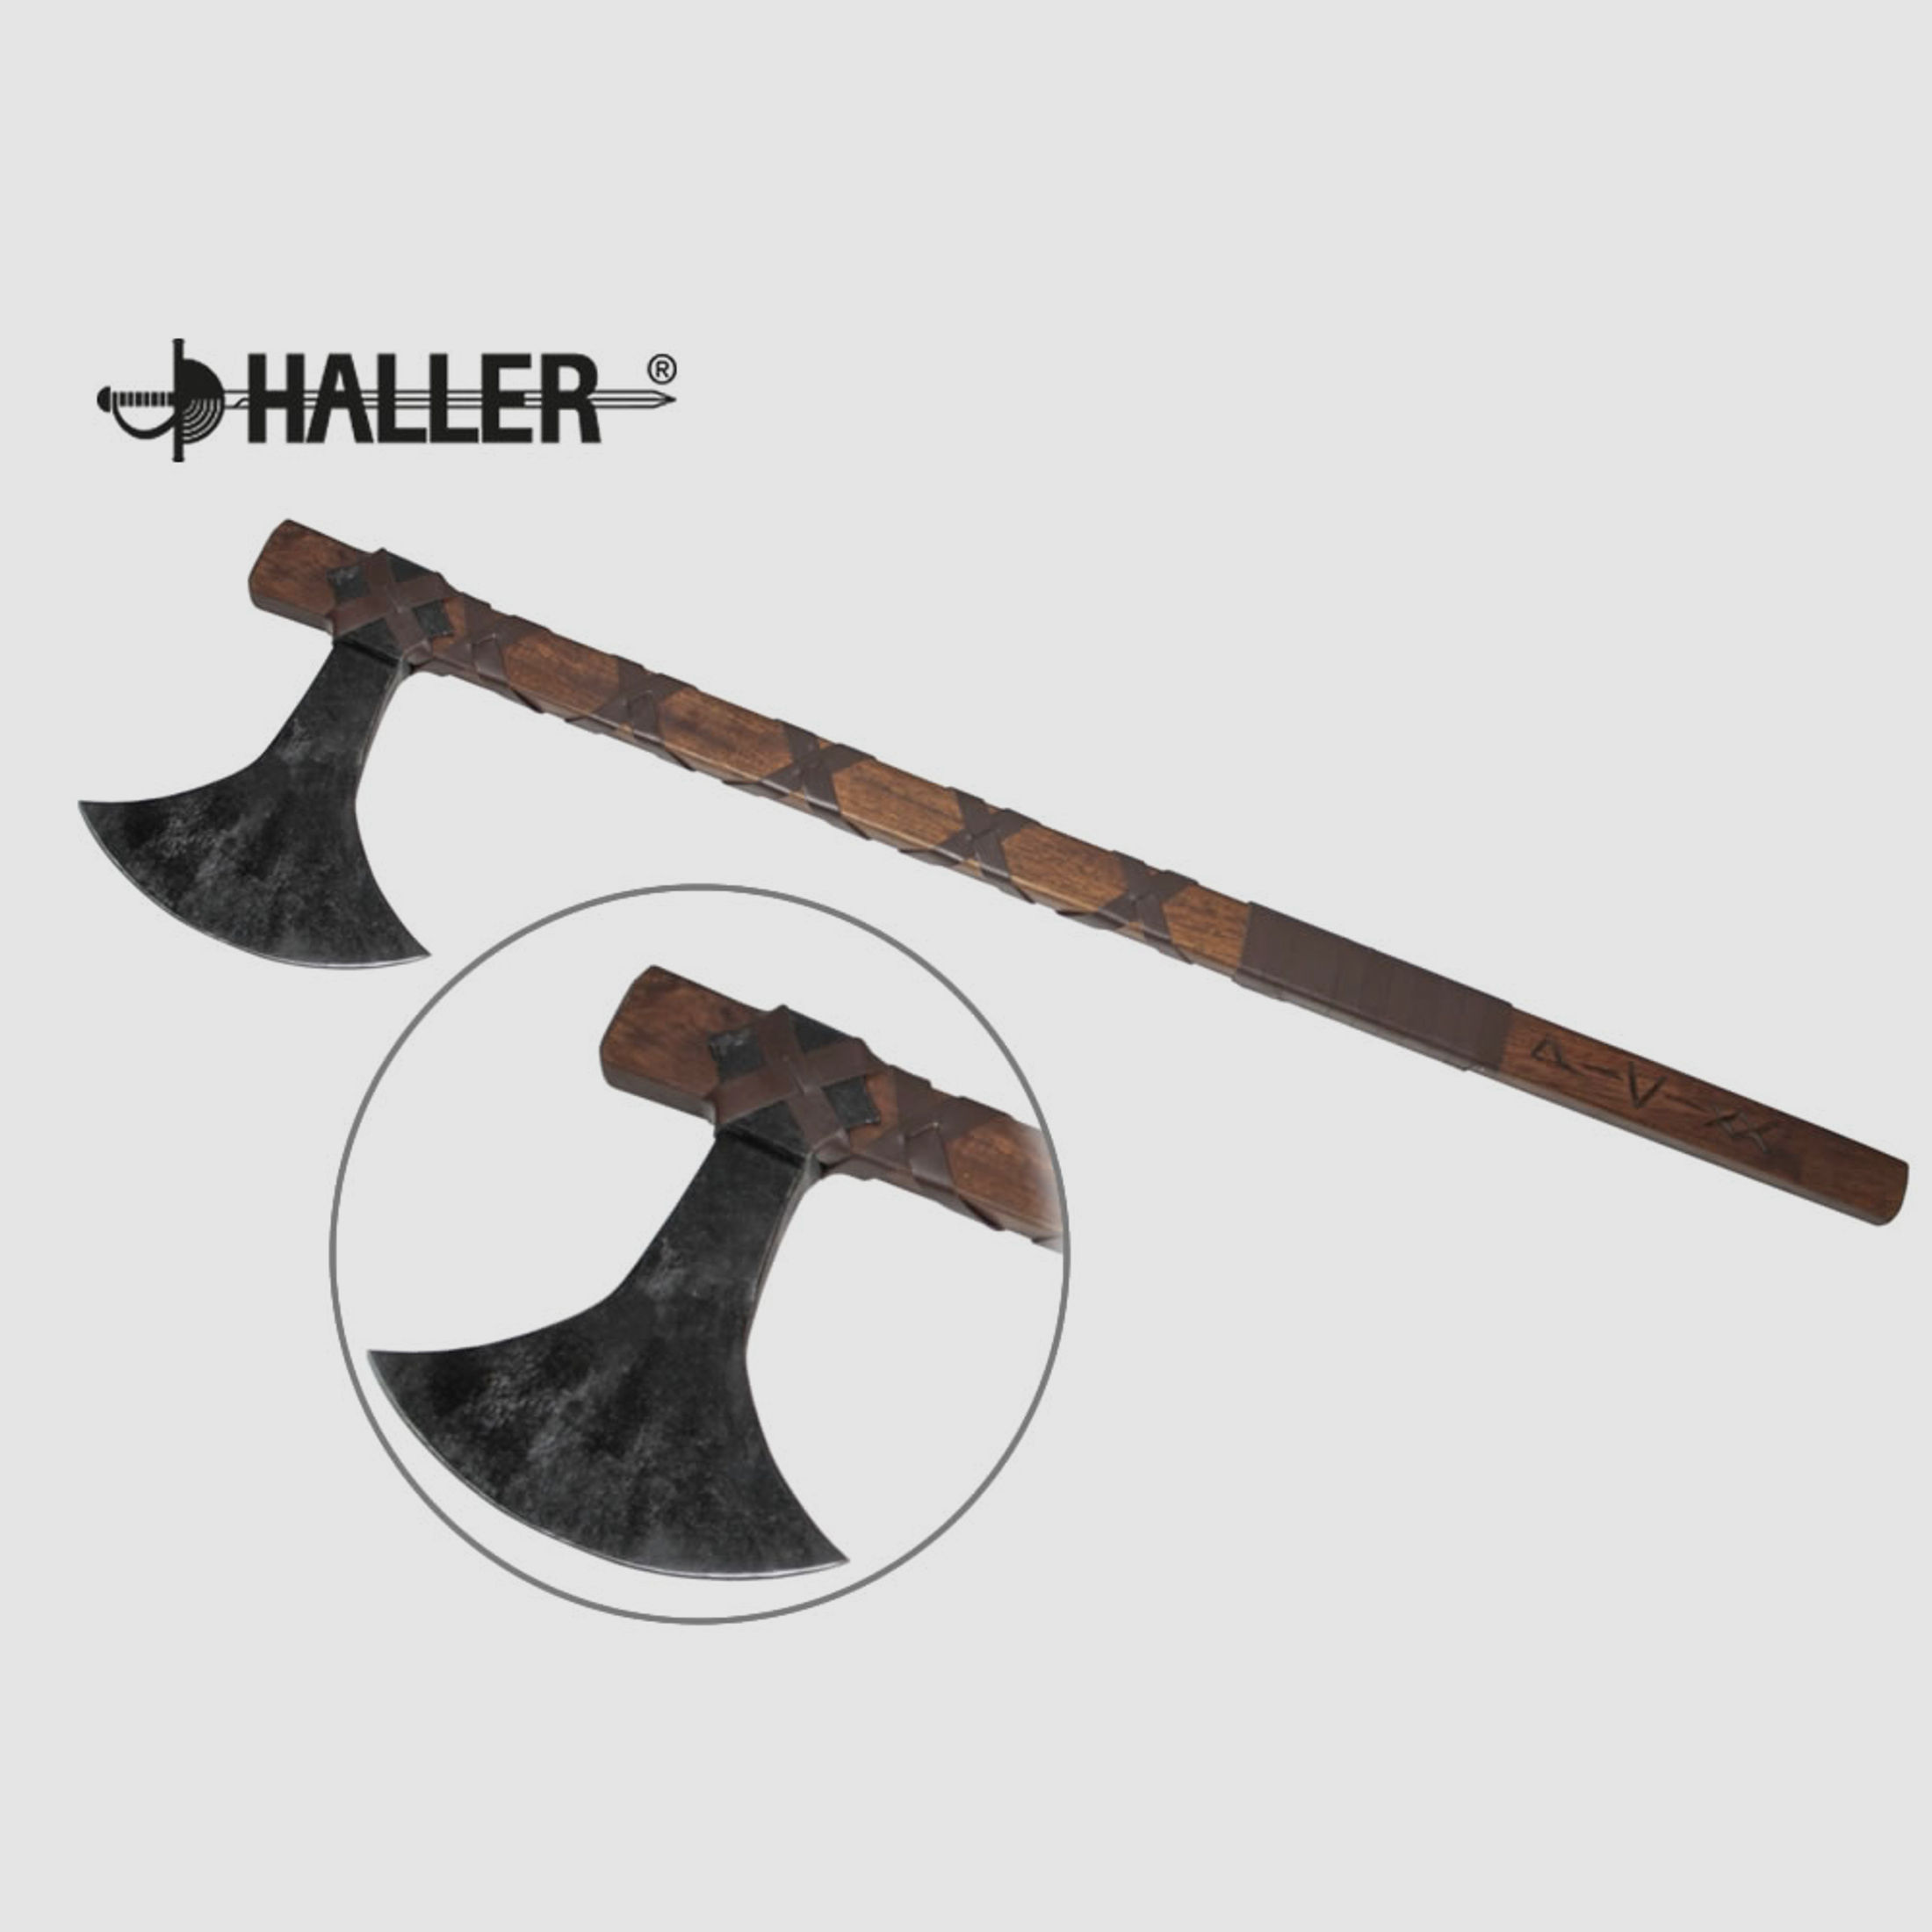 HALLER DĂ¤nenaxt, mit Runen verziert, Blatt C-Stahl, Griff Holz, Lederwicklung, ca 855 mm